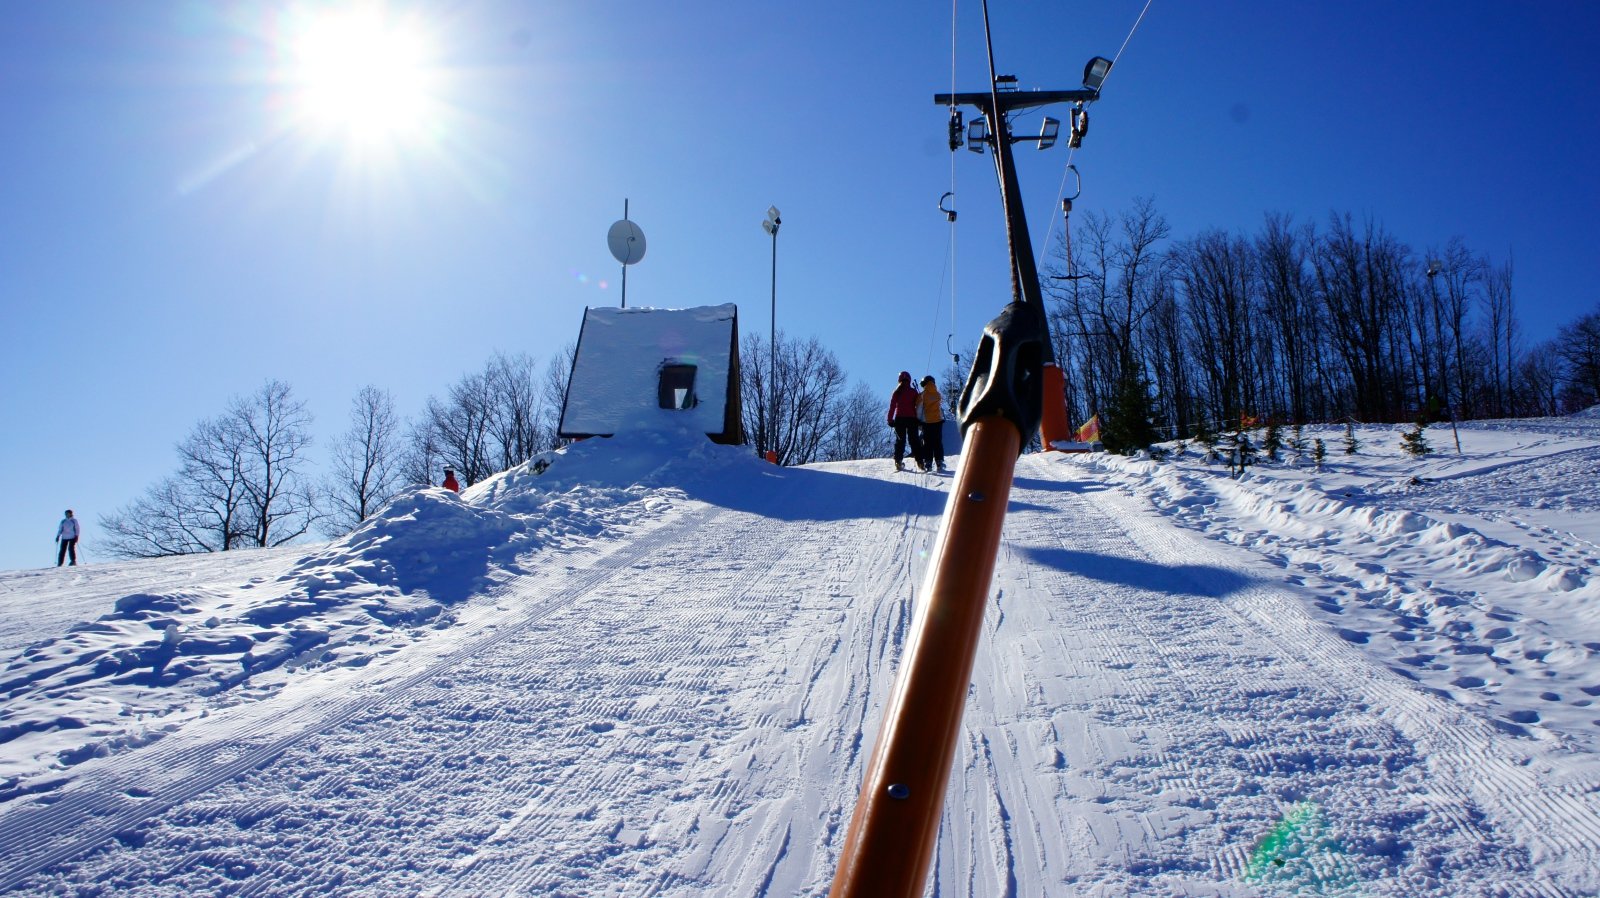 Snowboardosok mumusa: a csákányos lift